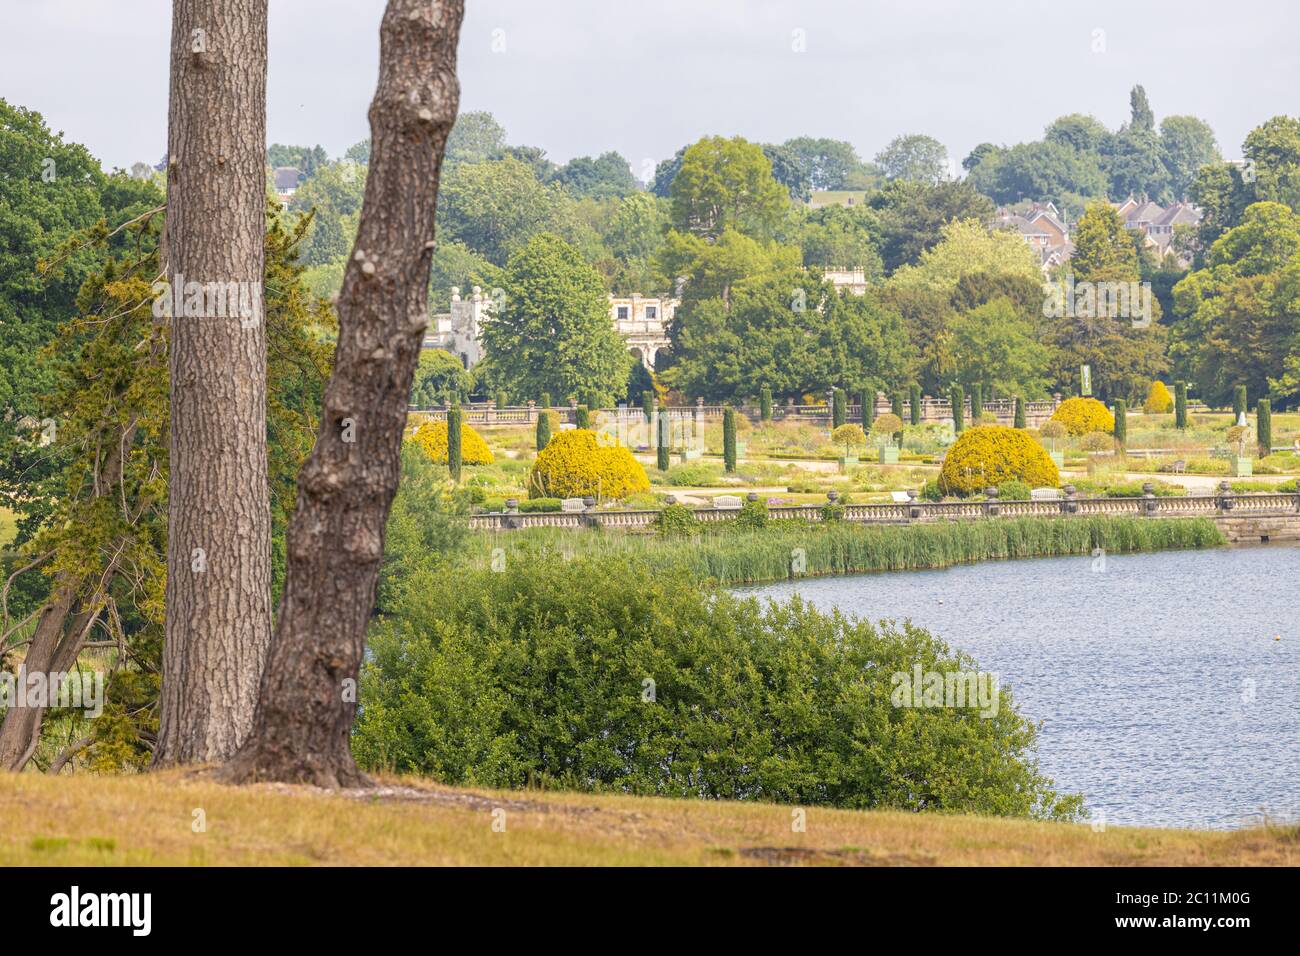 Images de Trentham Gardens à Stoke-on-Trent Staffordshire, Royaume-Uni Banque D'Images